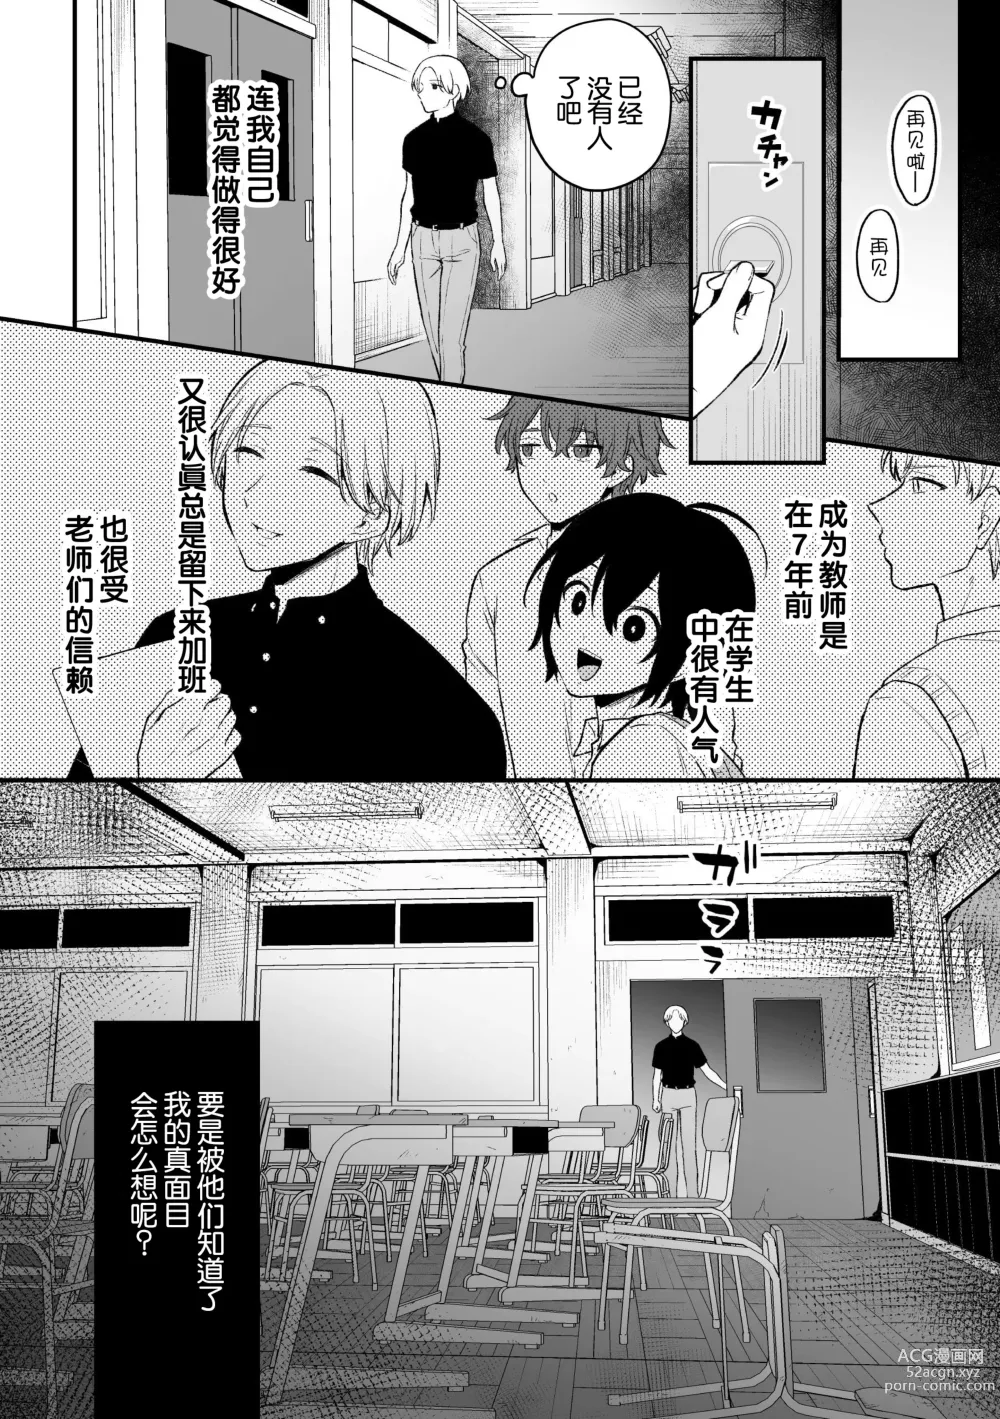 Page 3 of manga Inrei Taiken Ch. 5 ~Iwakutsuki Kyoushitsu de Ananie ni Fukeru Hentai Kyoushi no Hanashi~